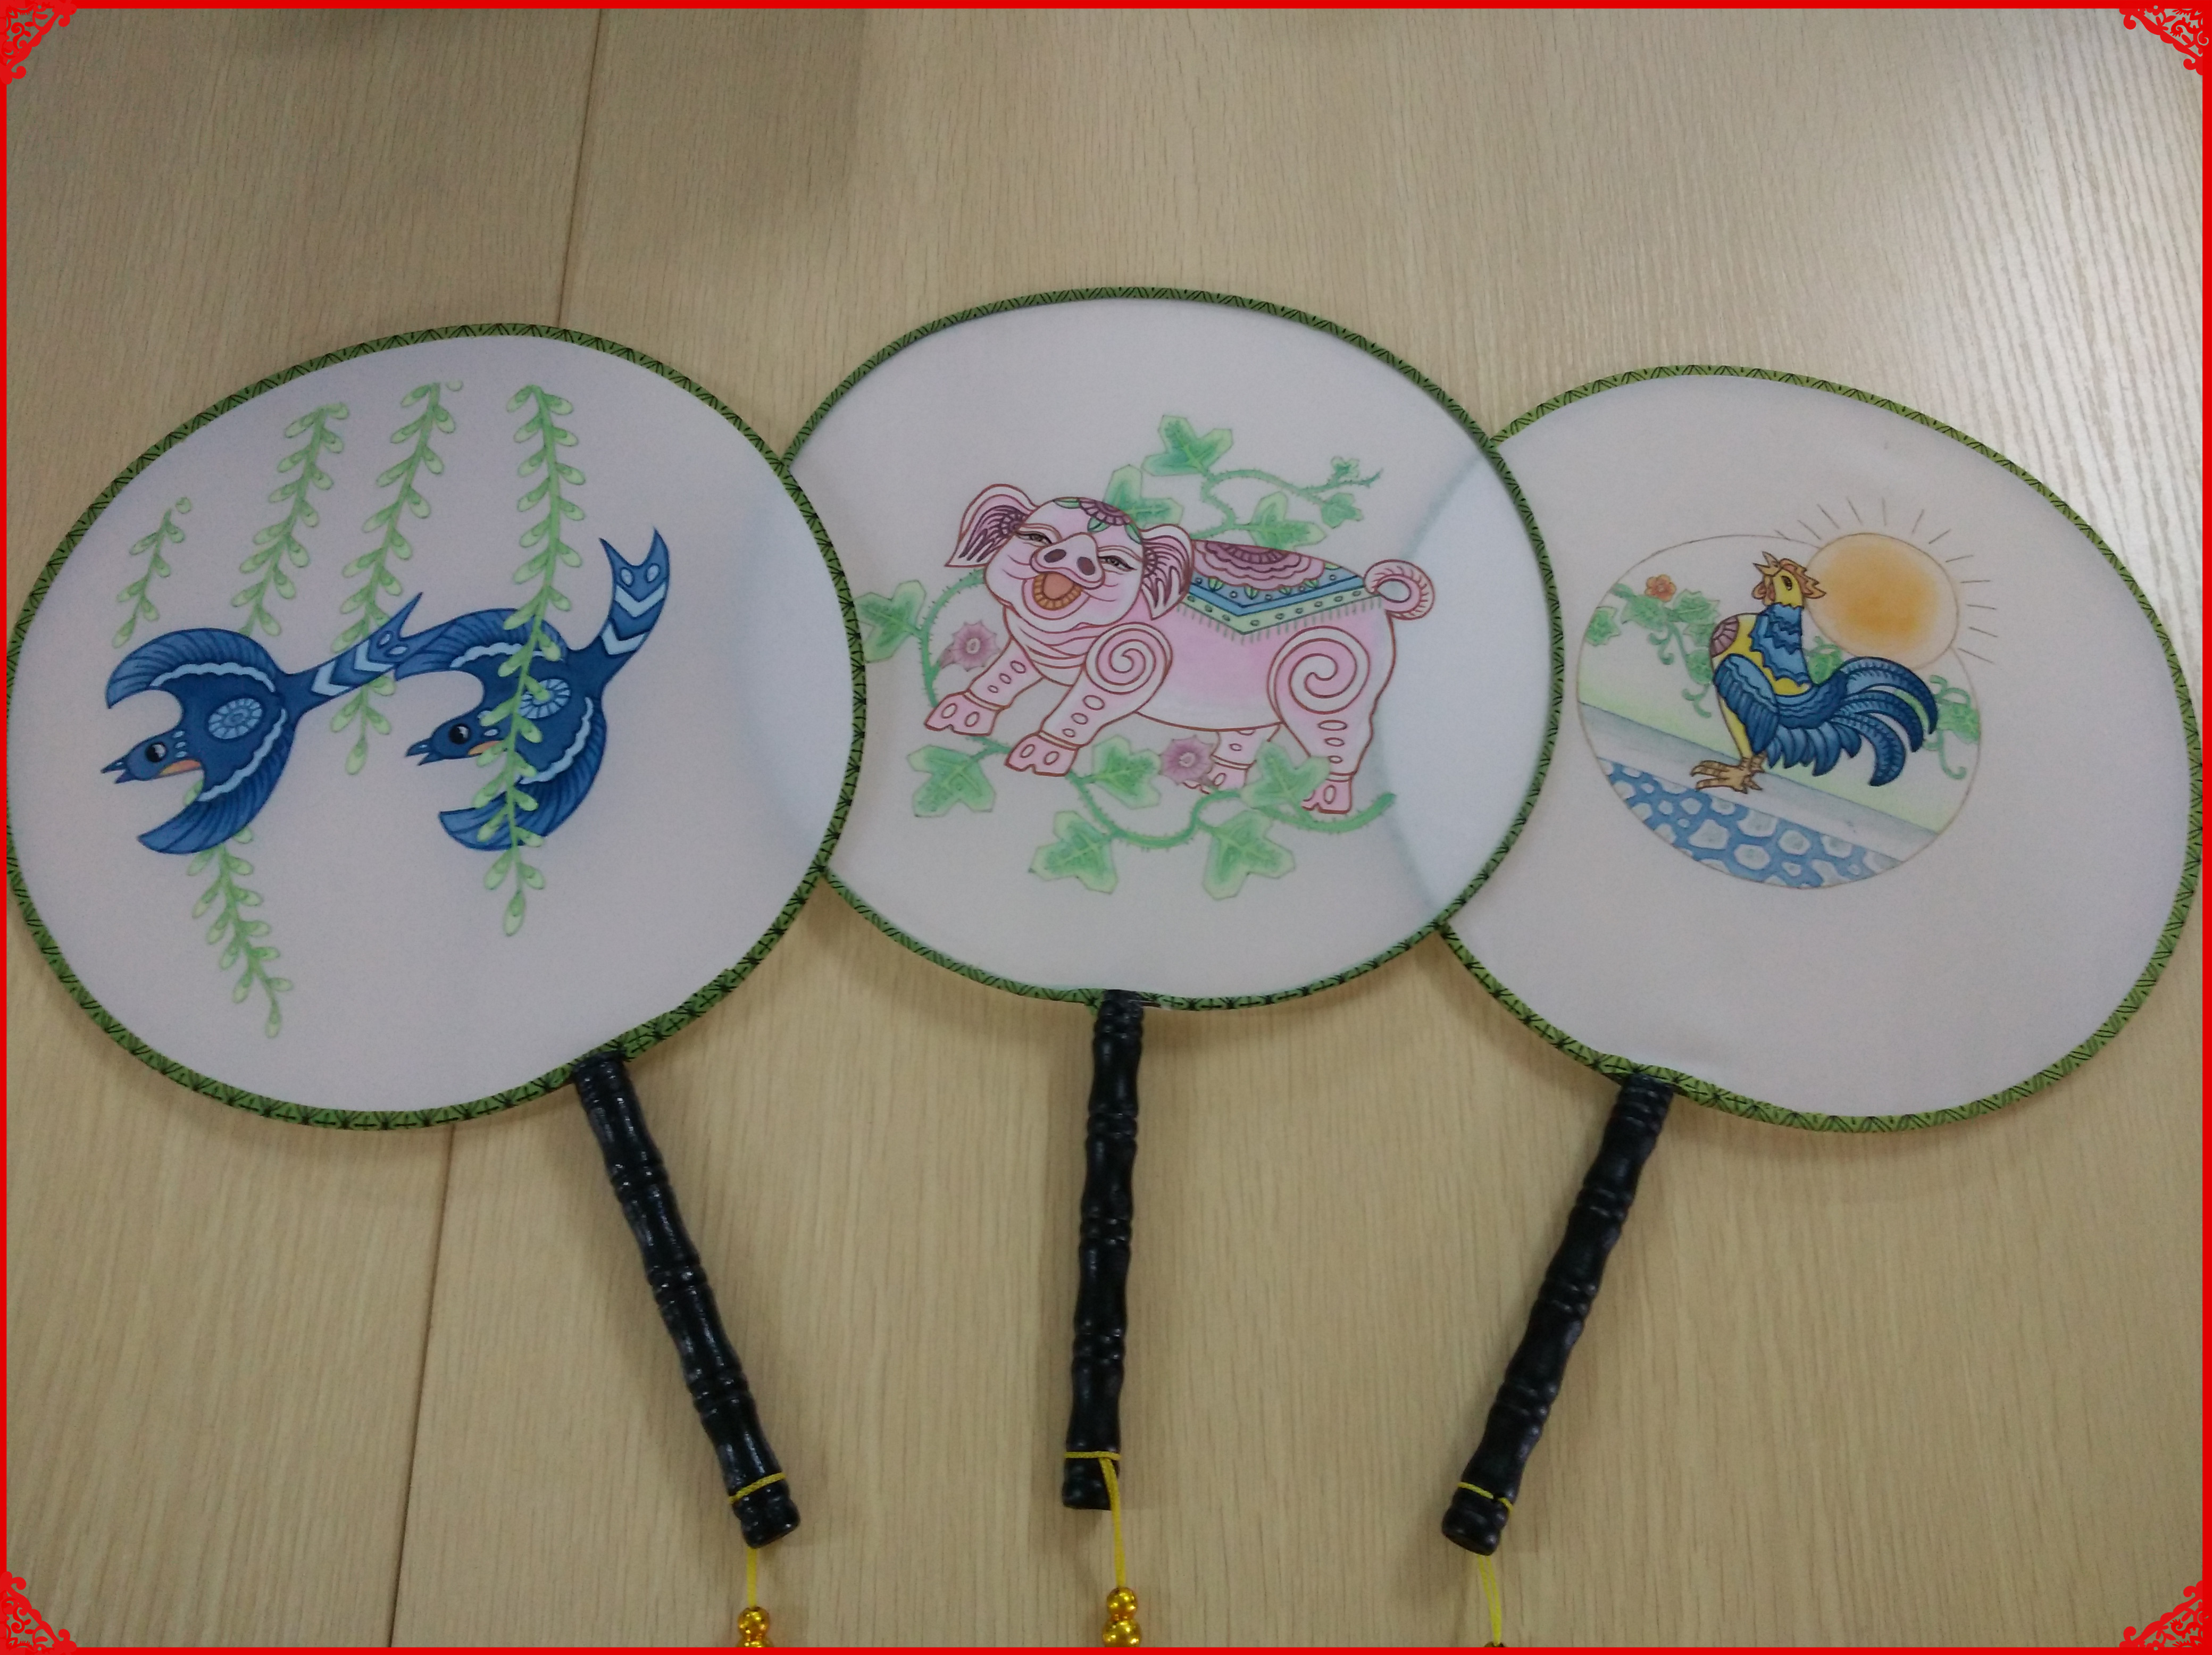 龙门县图书馆举办“文化传承画中情•儿童创意扇子画”文化惠民活动